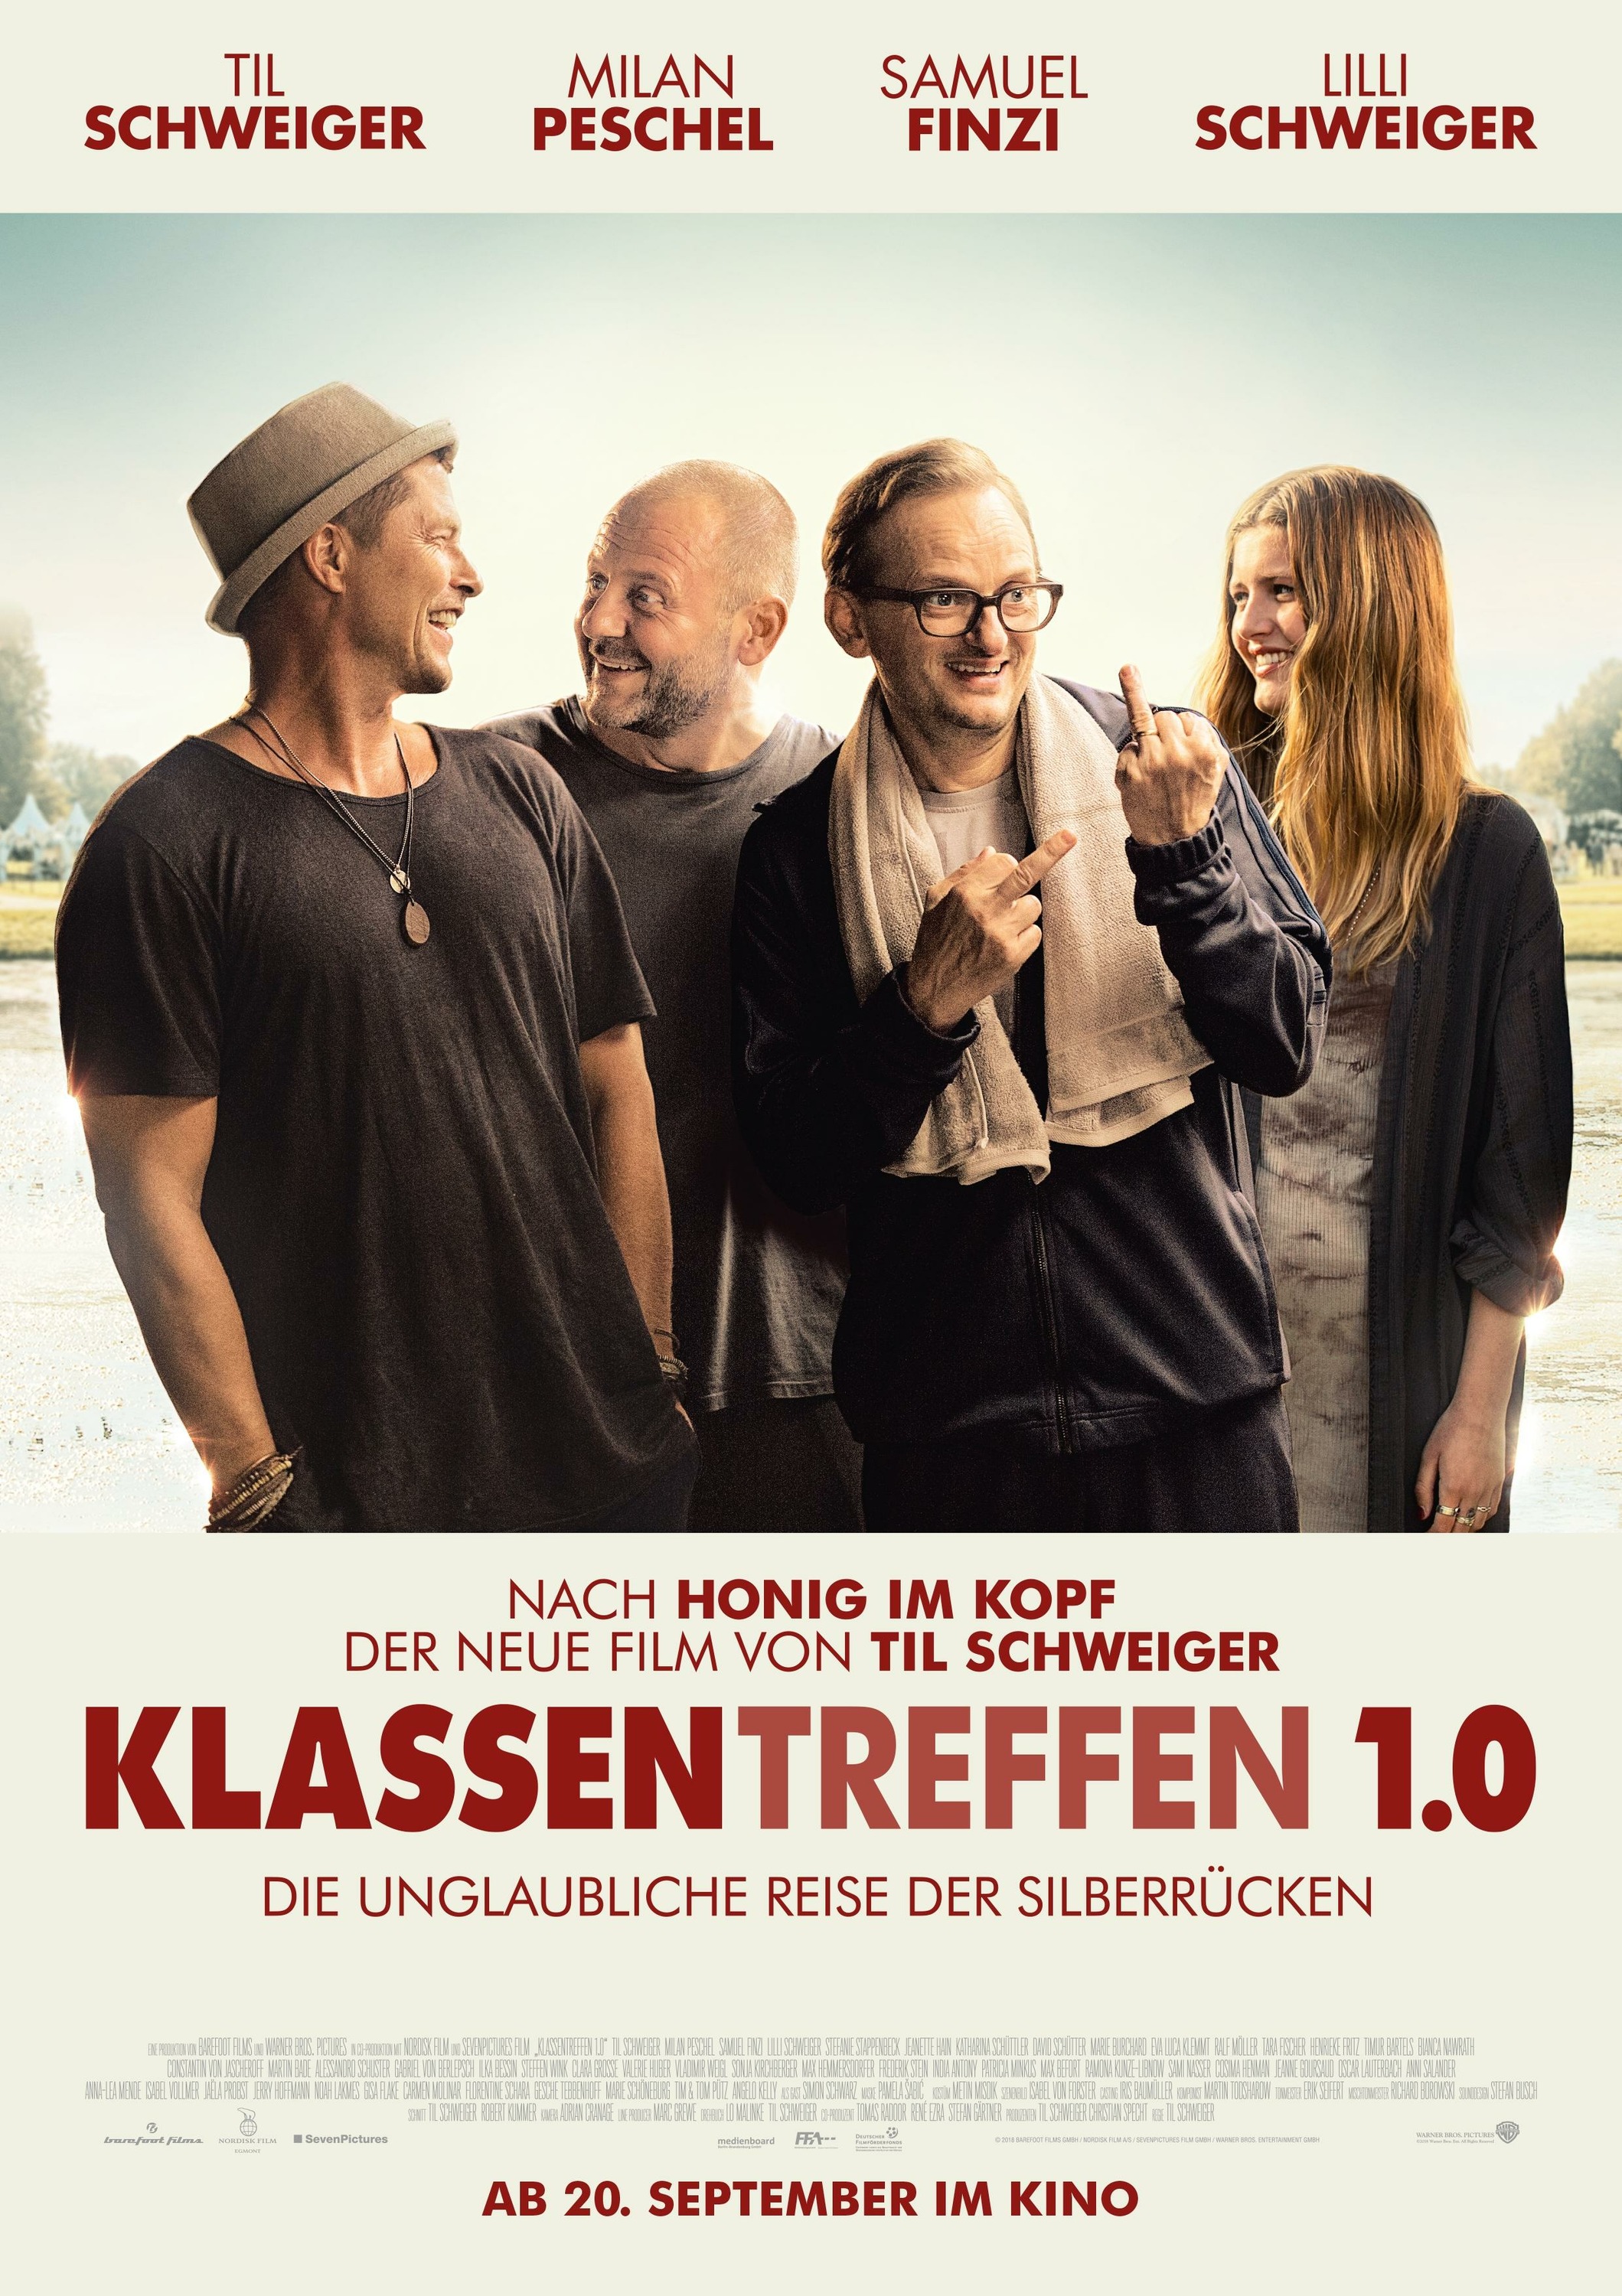 Mega Sized Movie Poster Image for Klassentreffen 1.0 